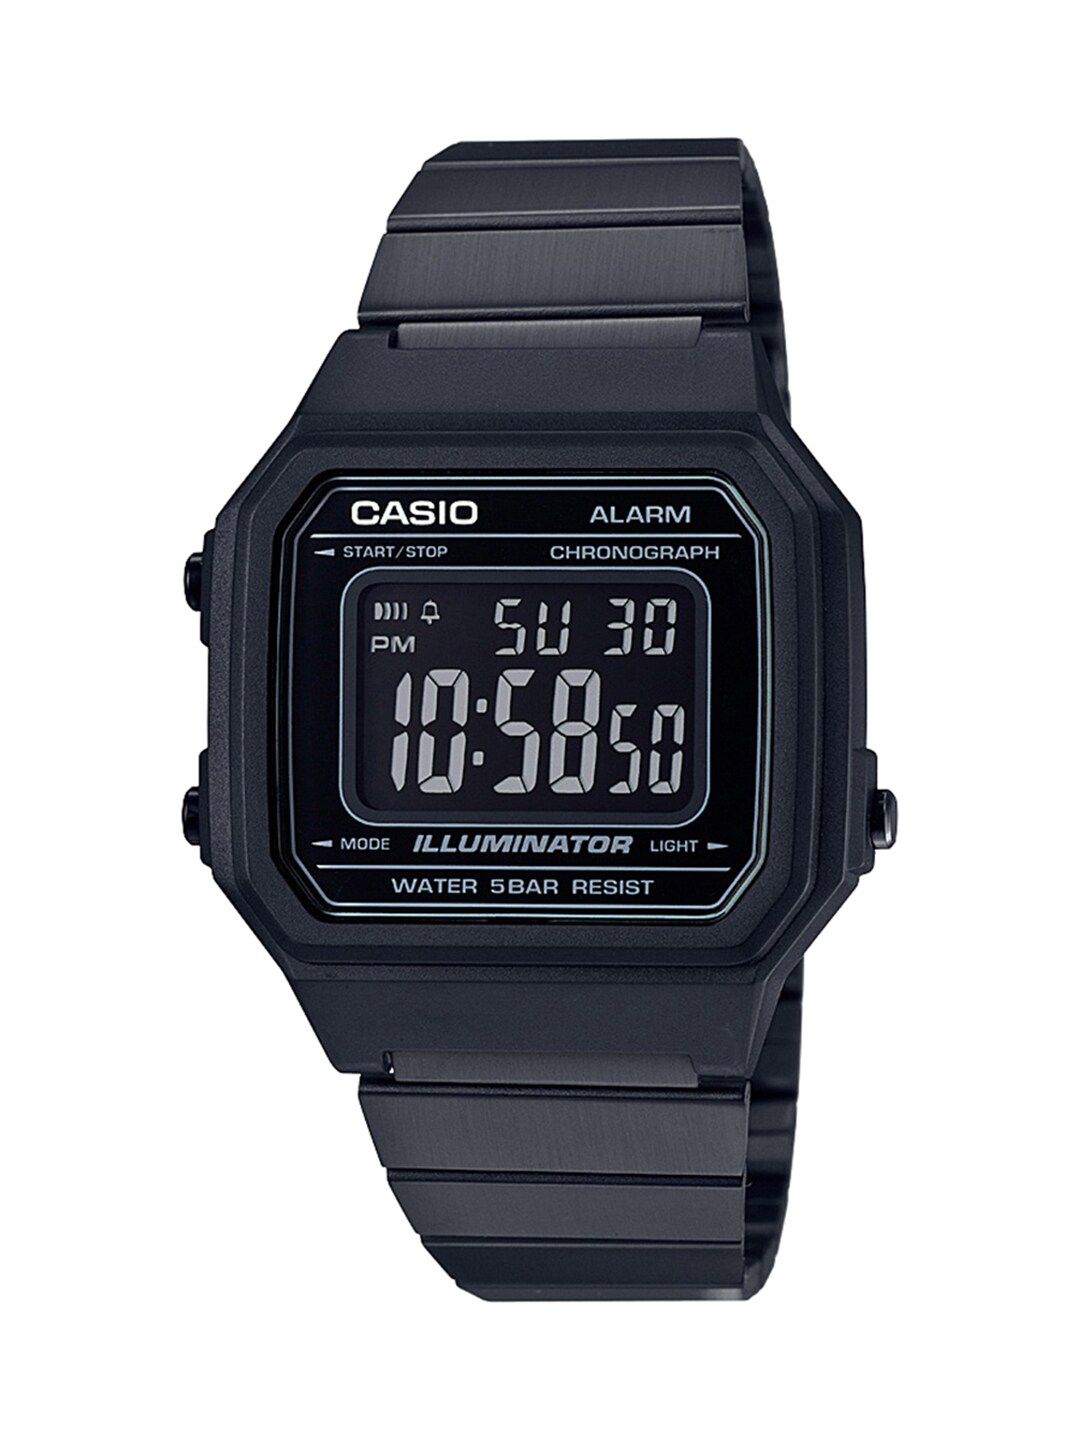 CASIO Unisex Black Digital Watch D199 Price in India